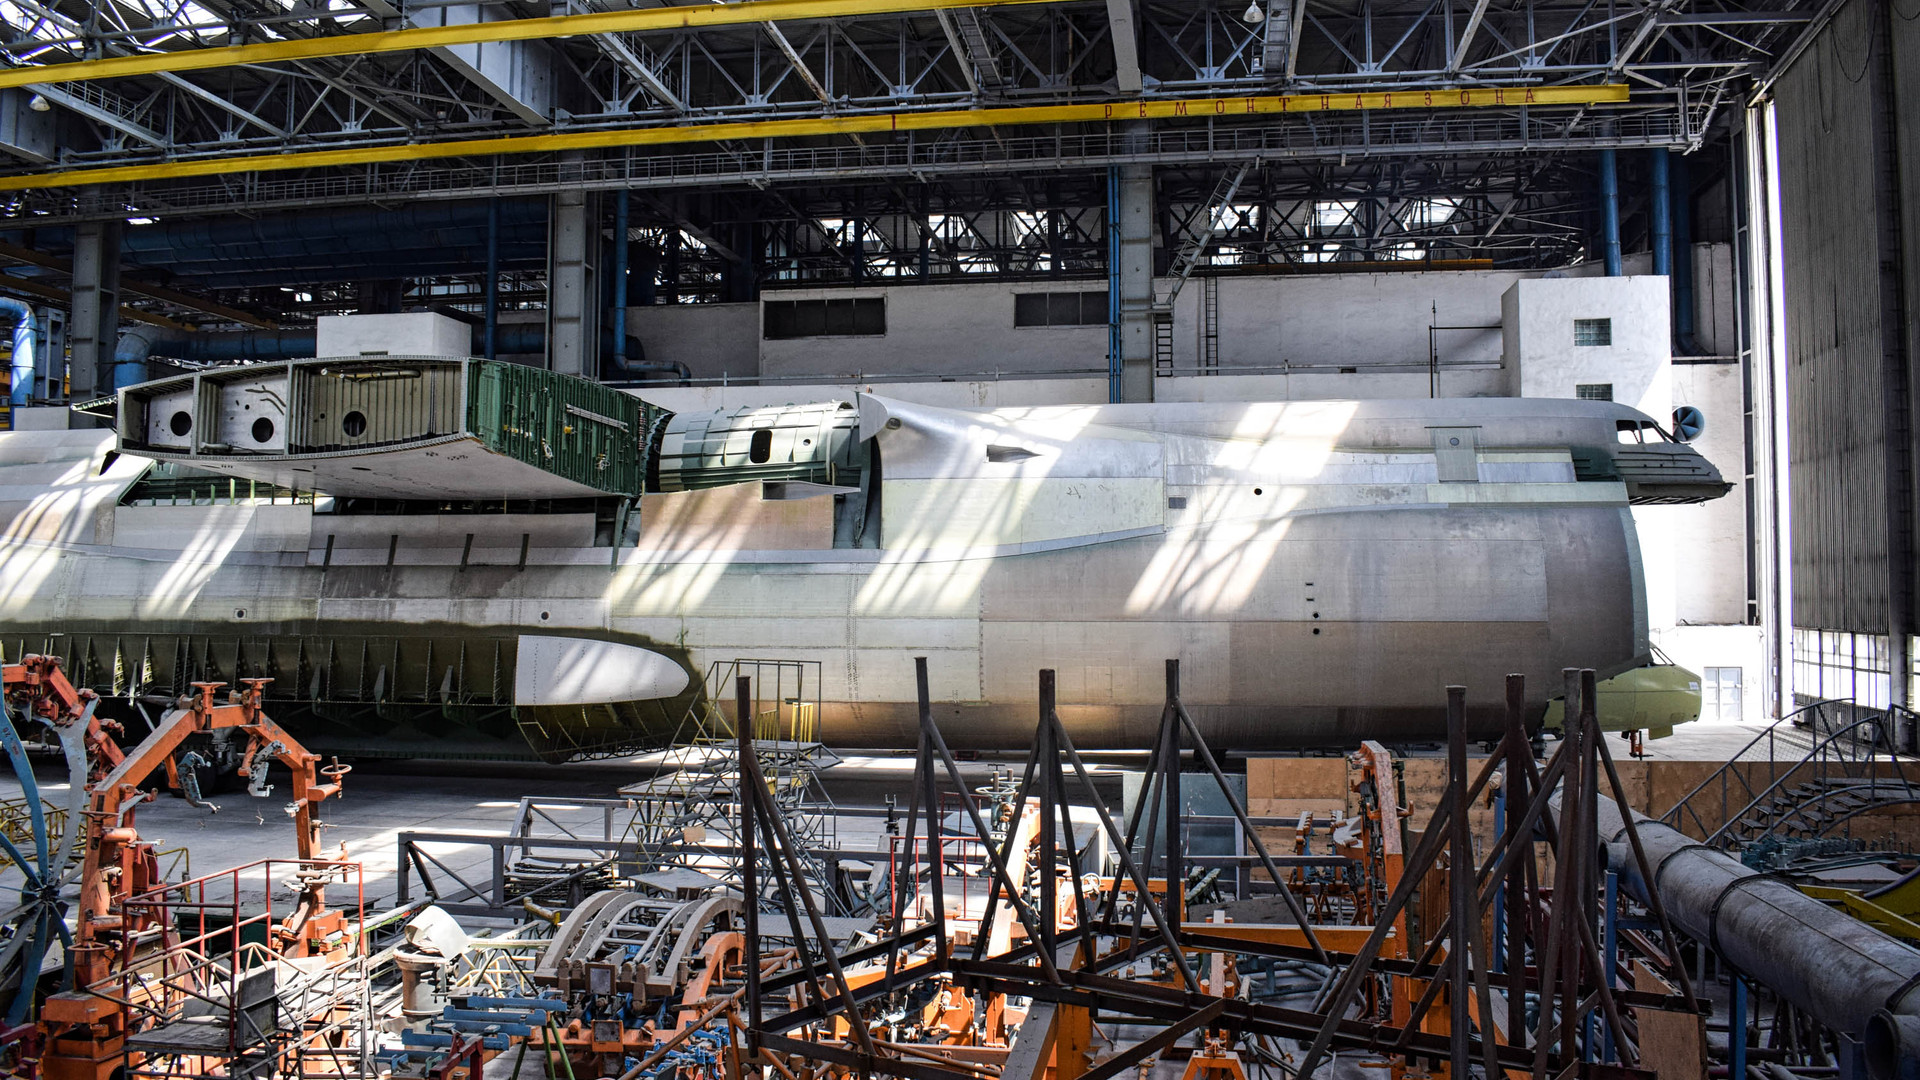 Phần thân thứ hai của Antonov AN-225 chưa hoàn thiện, một trong những di sản ngoạn mục nhất của kỹ thuật máy bay Liên Xô. Ảnh: CNN.